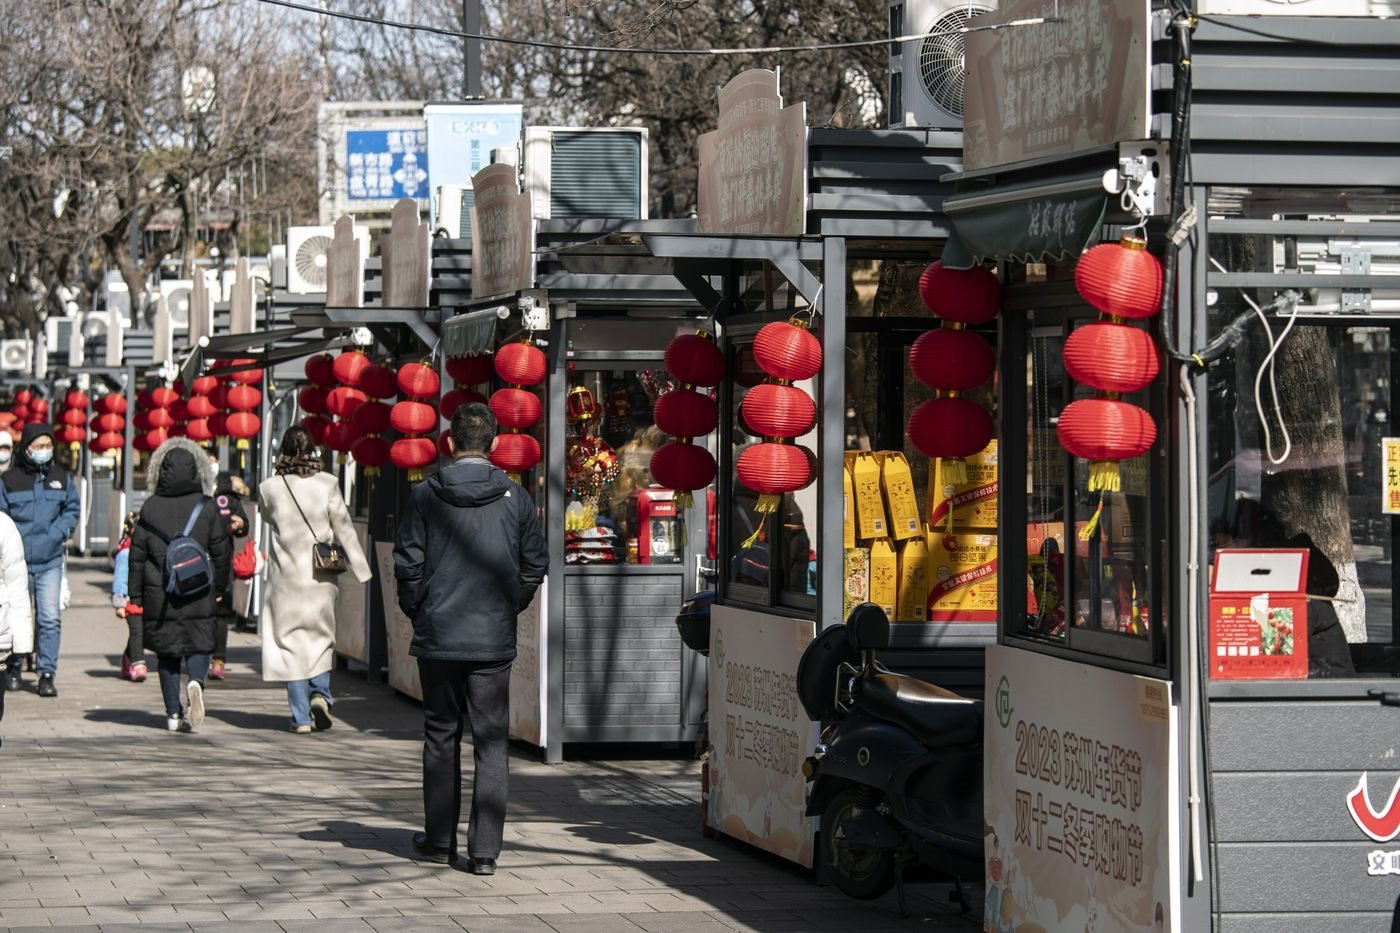 Trung Quốc 'phù phép' cho các hàng chục nghìn bốt xét nghiệm Covid: Địa điểm 'muốn quên' của người dân nay thành cửa hàng thực phẩm và trạm nghỉ cho công nhân vệ sinh - Ảnh 1.